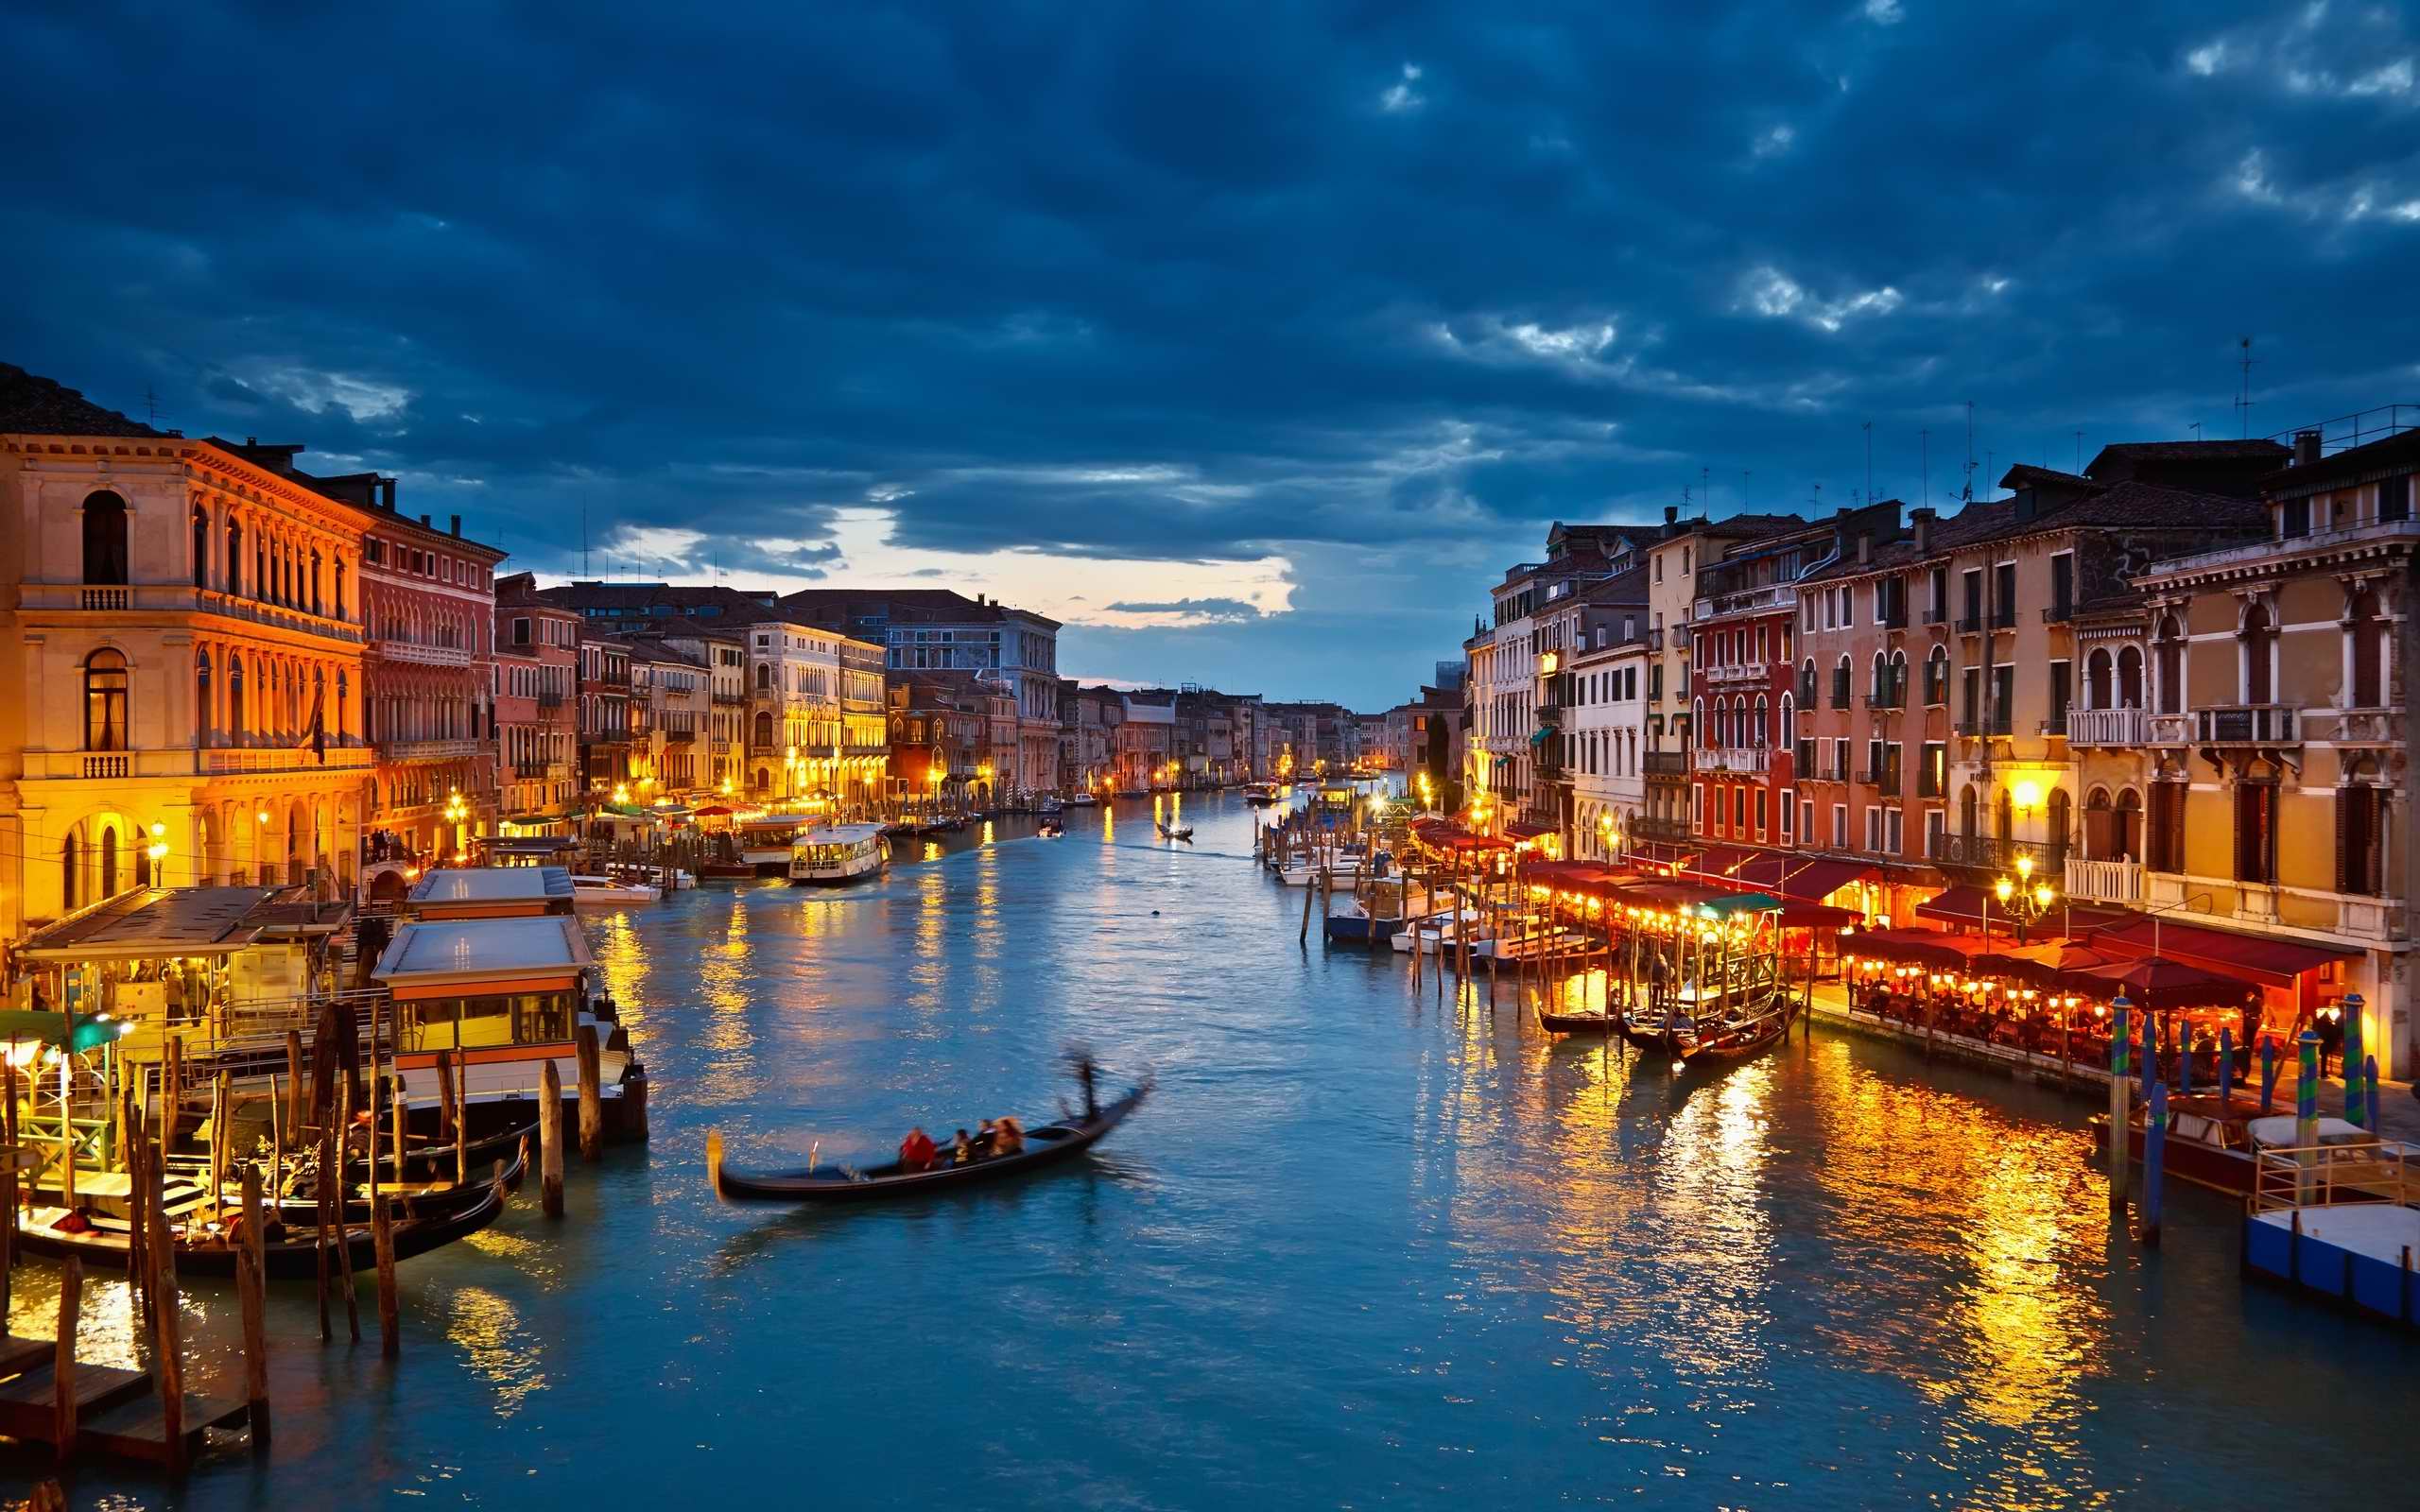 Tìm kiếm hình ảnh đẹp và cuốn hút về nền tảng Italy? Đến với WallpaperAccess để trải nghiệm và khám phá các bức hình nền đẹp nhất về nền tảng đất nước Italia.